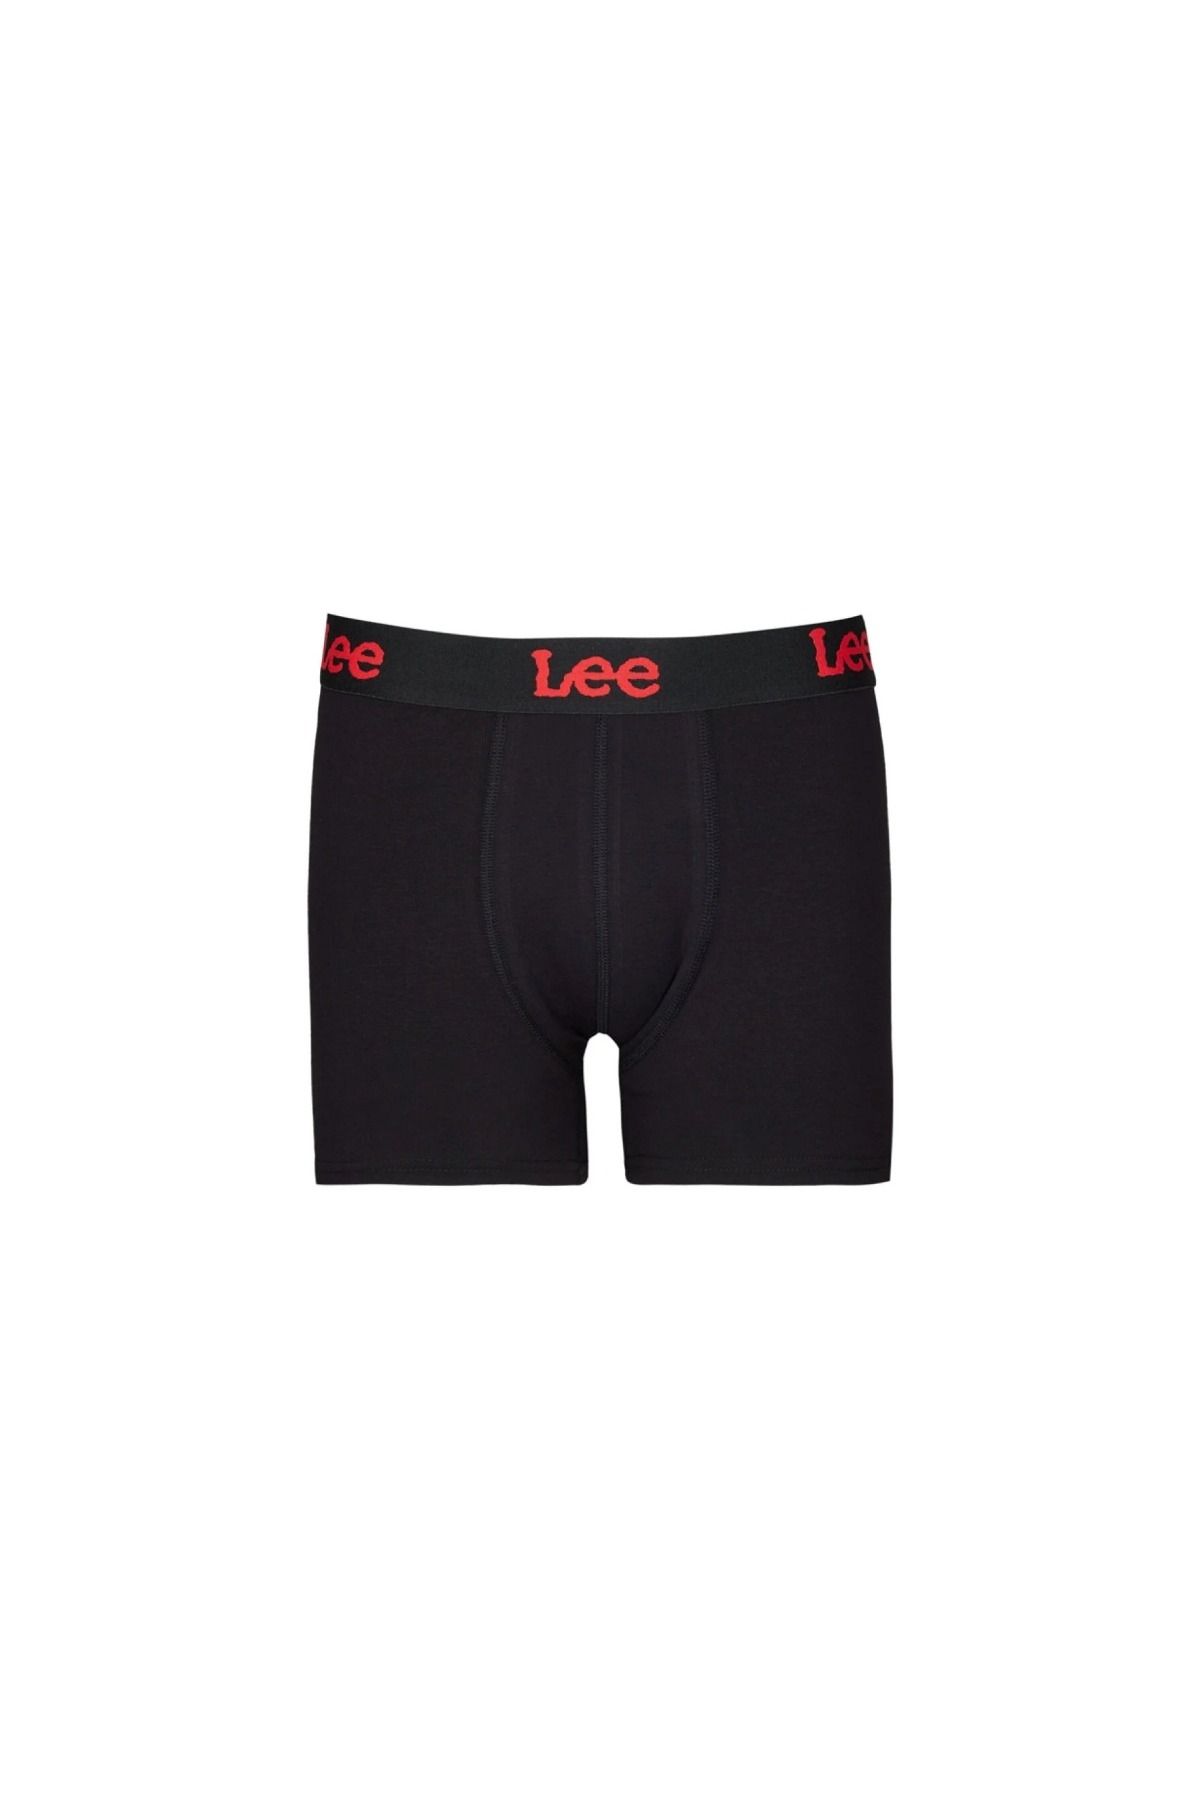 Lee Erkek Siyah İç Çamaşır